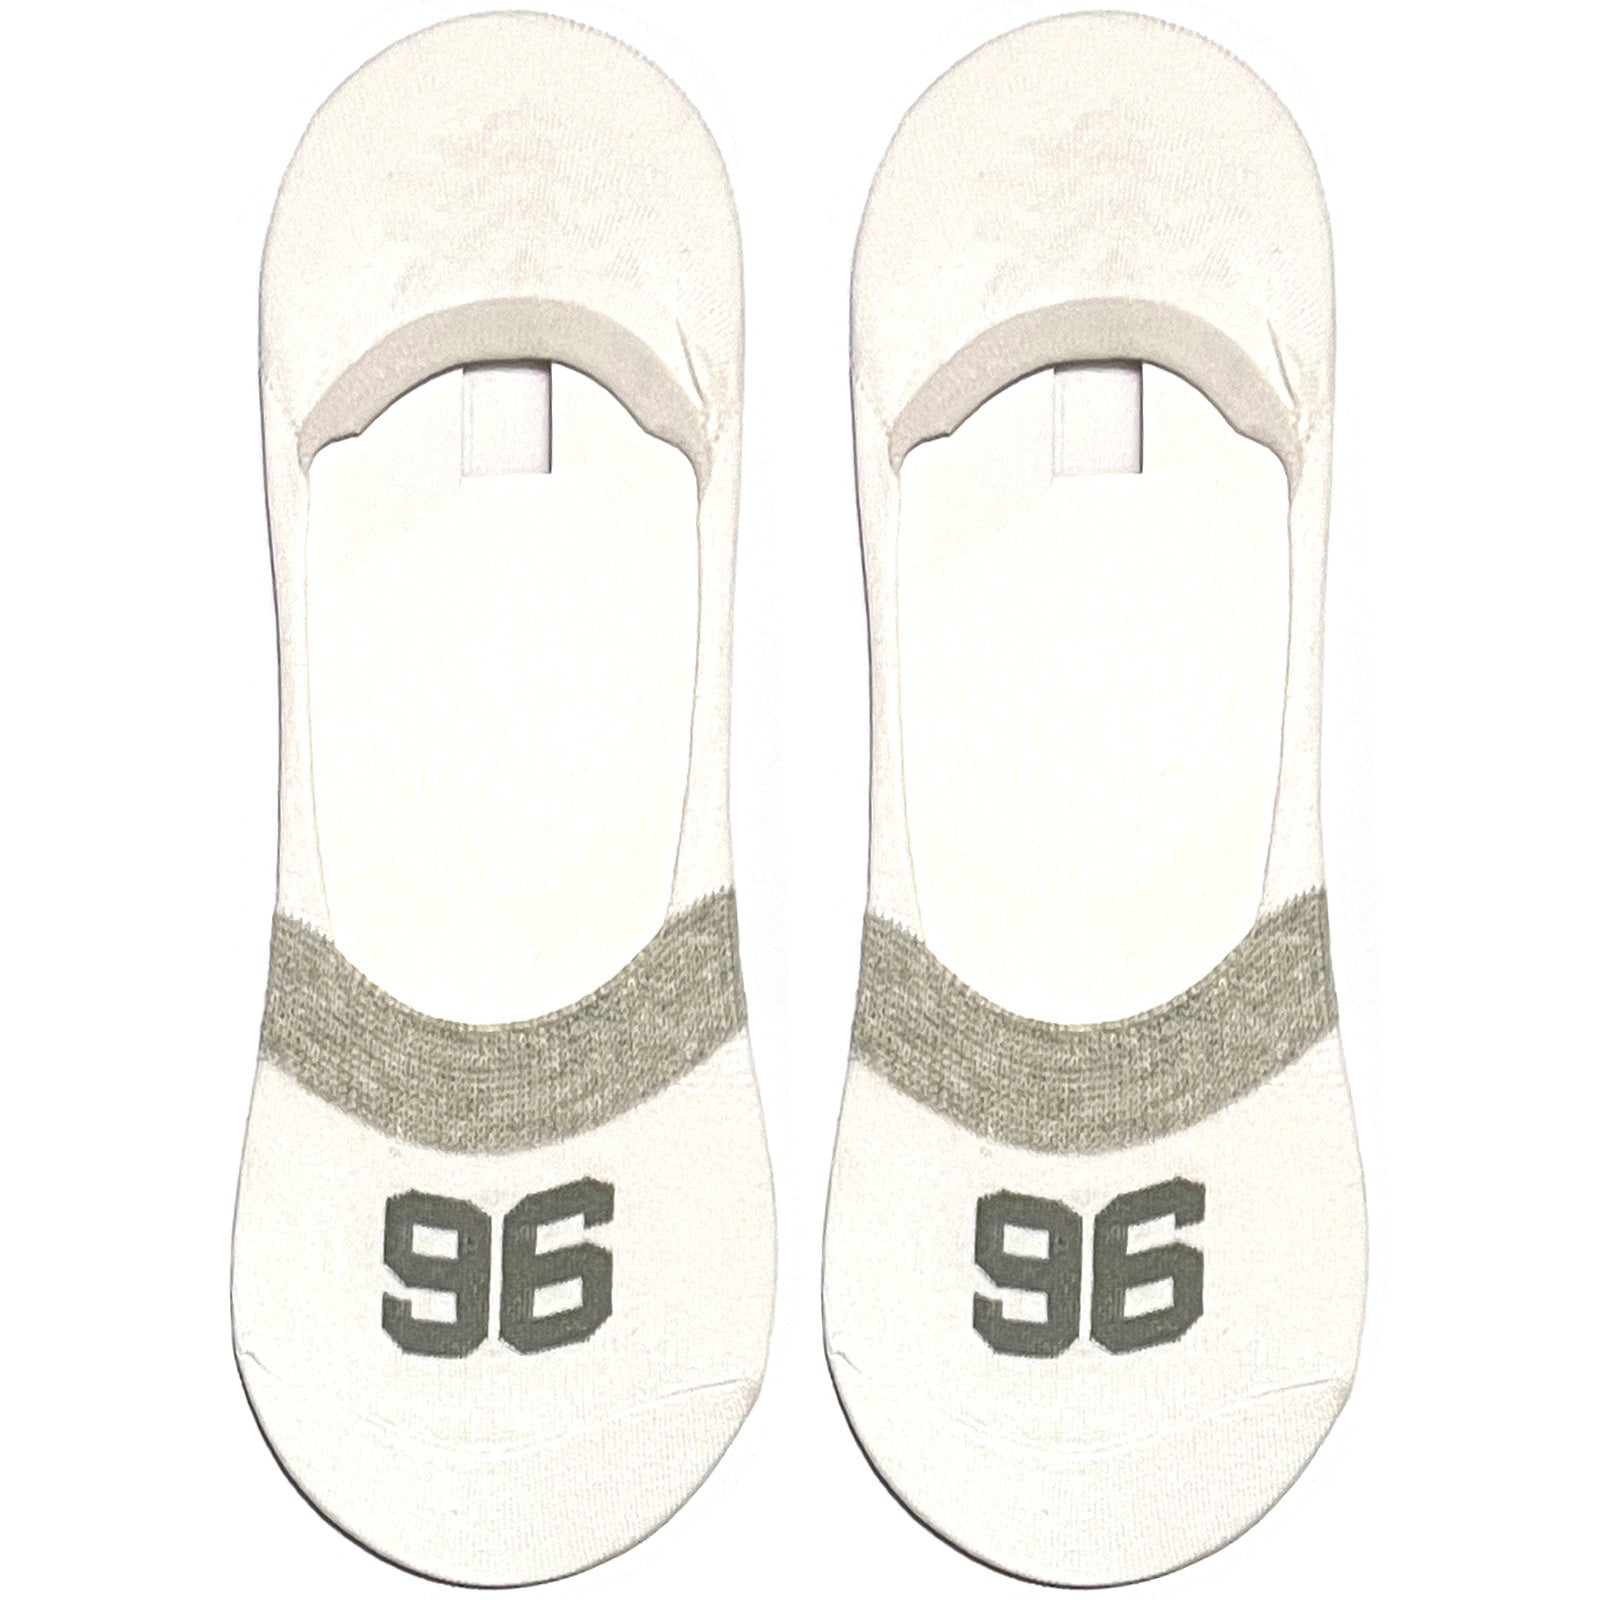 White 96 No Show Socks